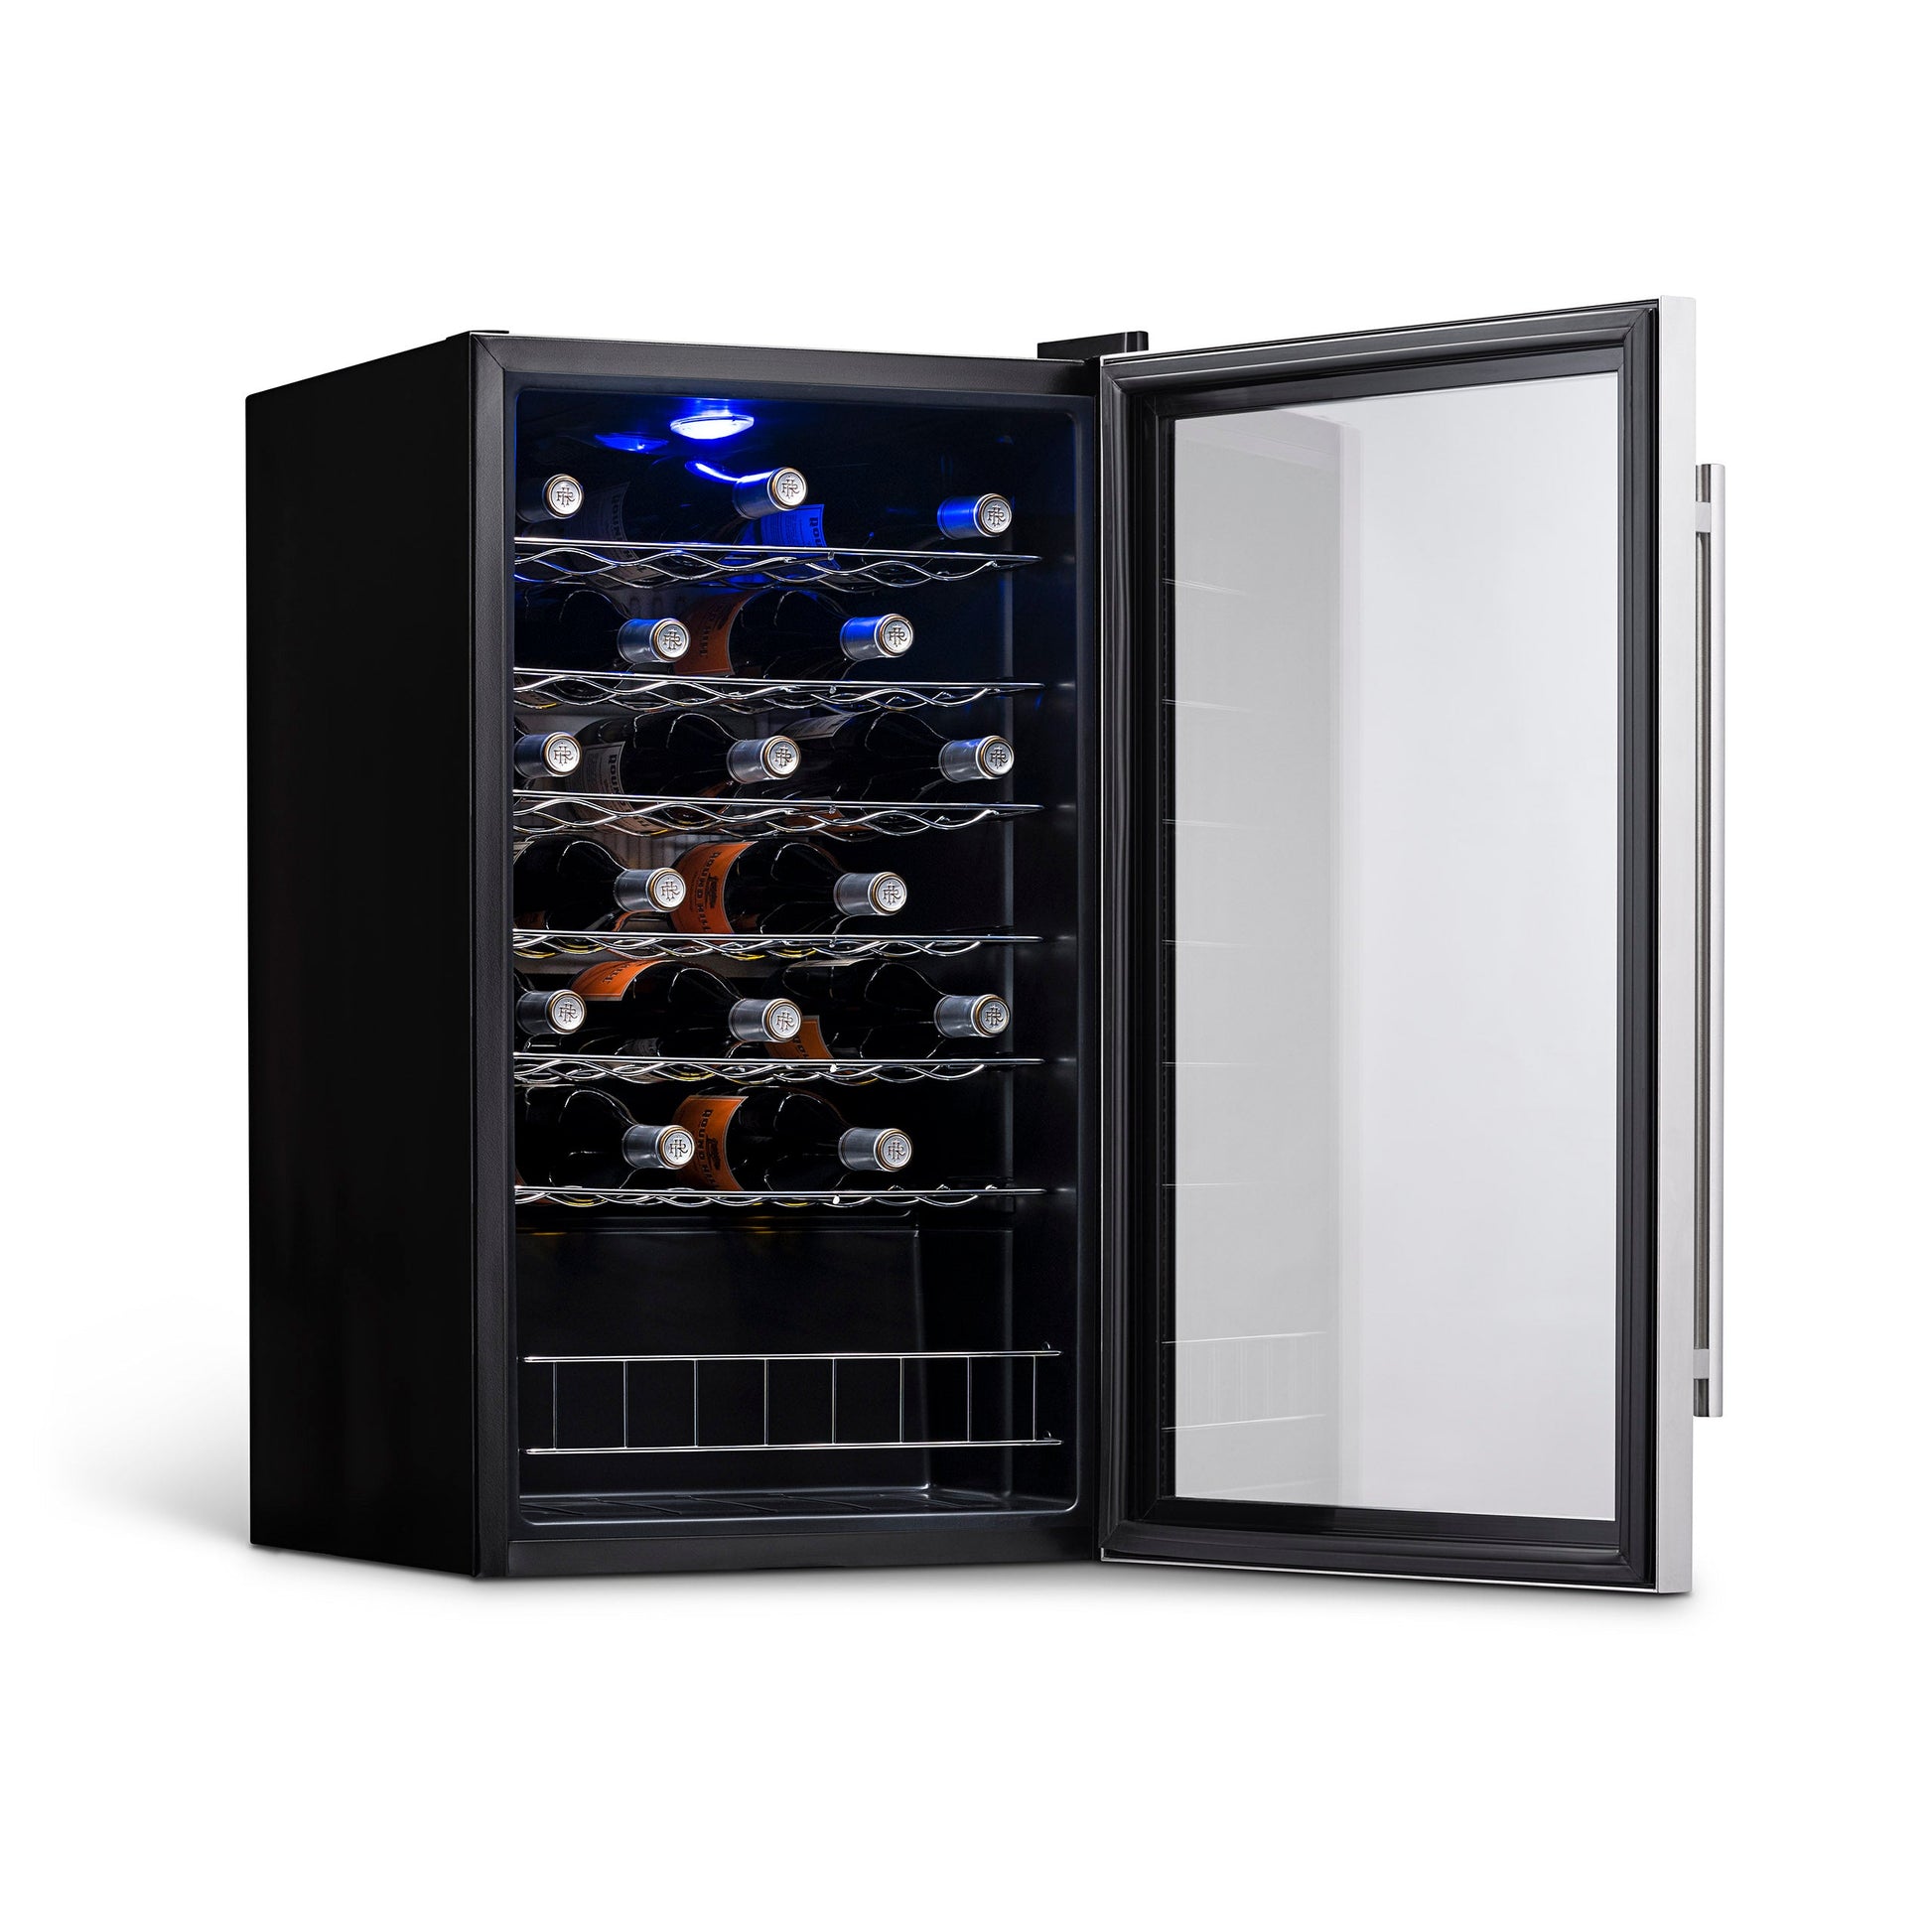 Newair Freestanding 33 Bottle Compressor Wine Fridge in Stainless Steel, Adjustable Chrome Racks